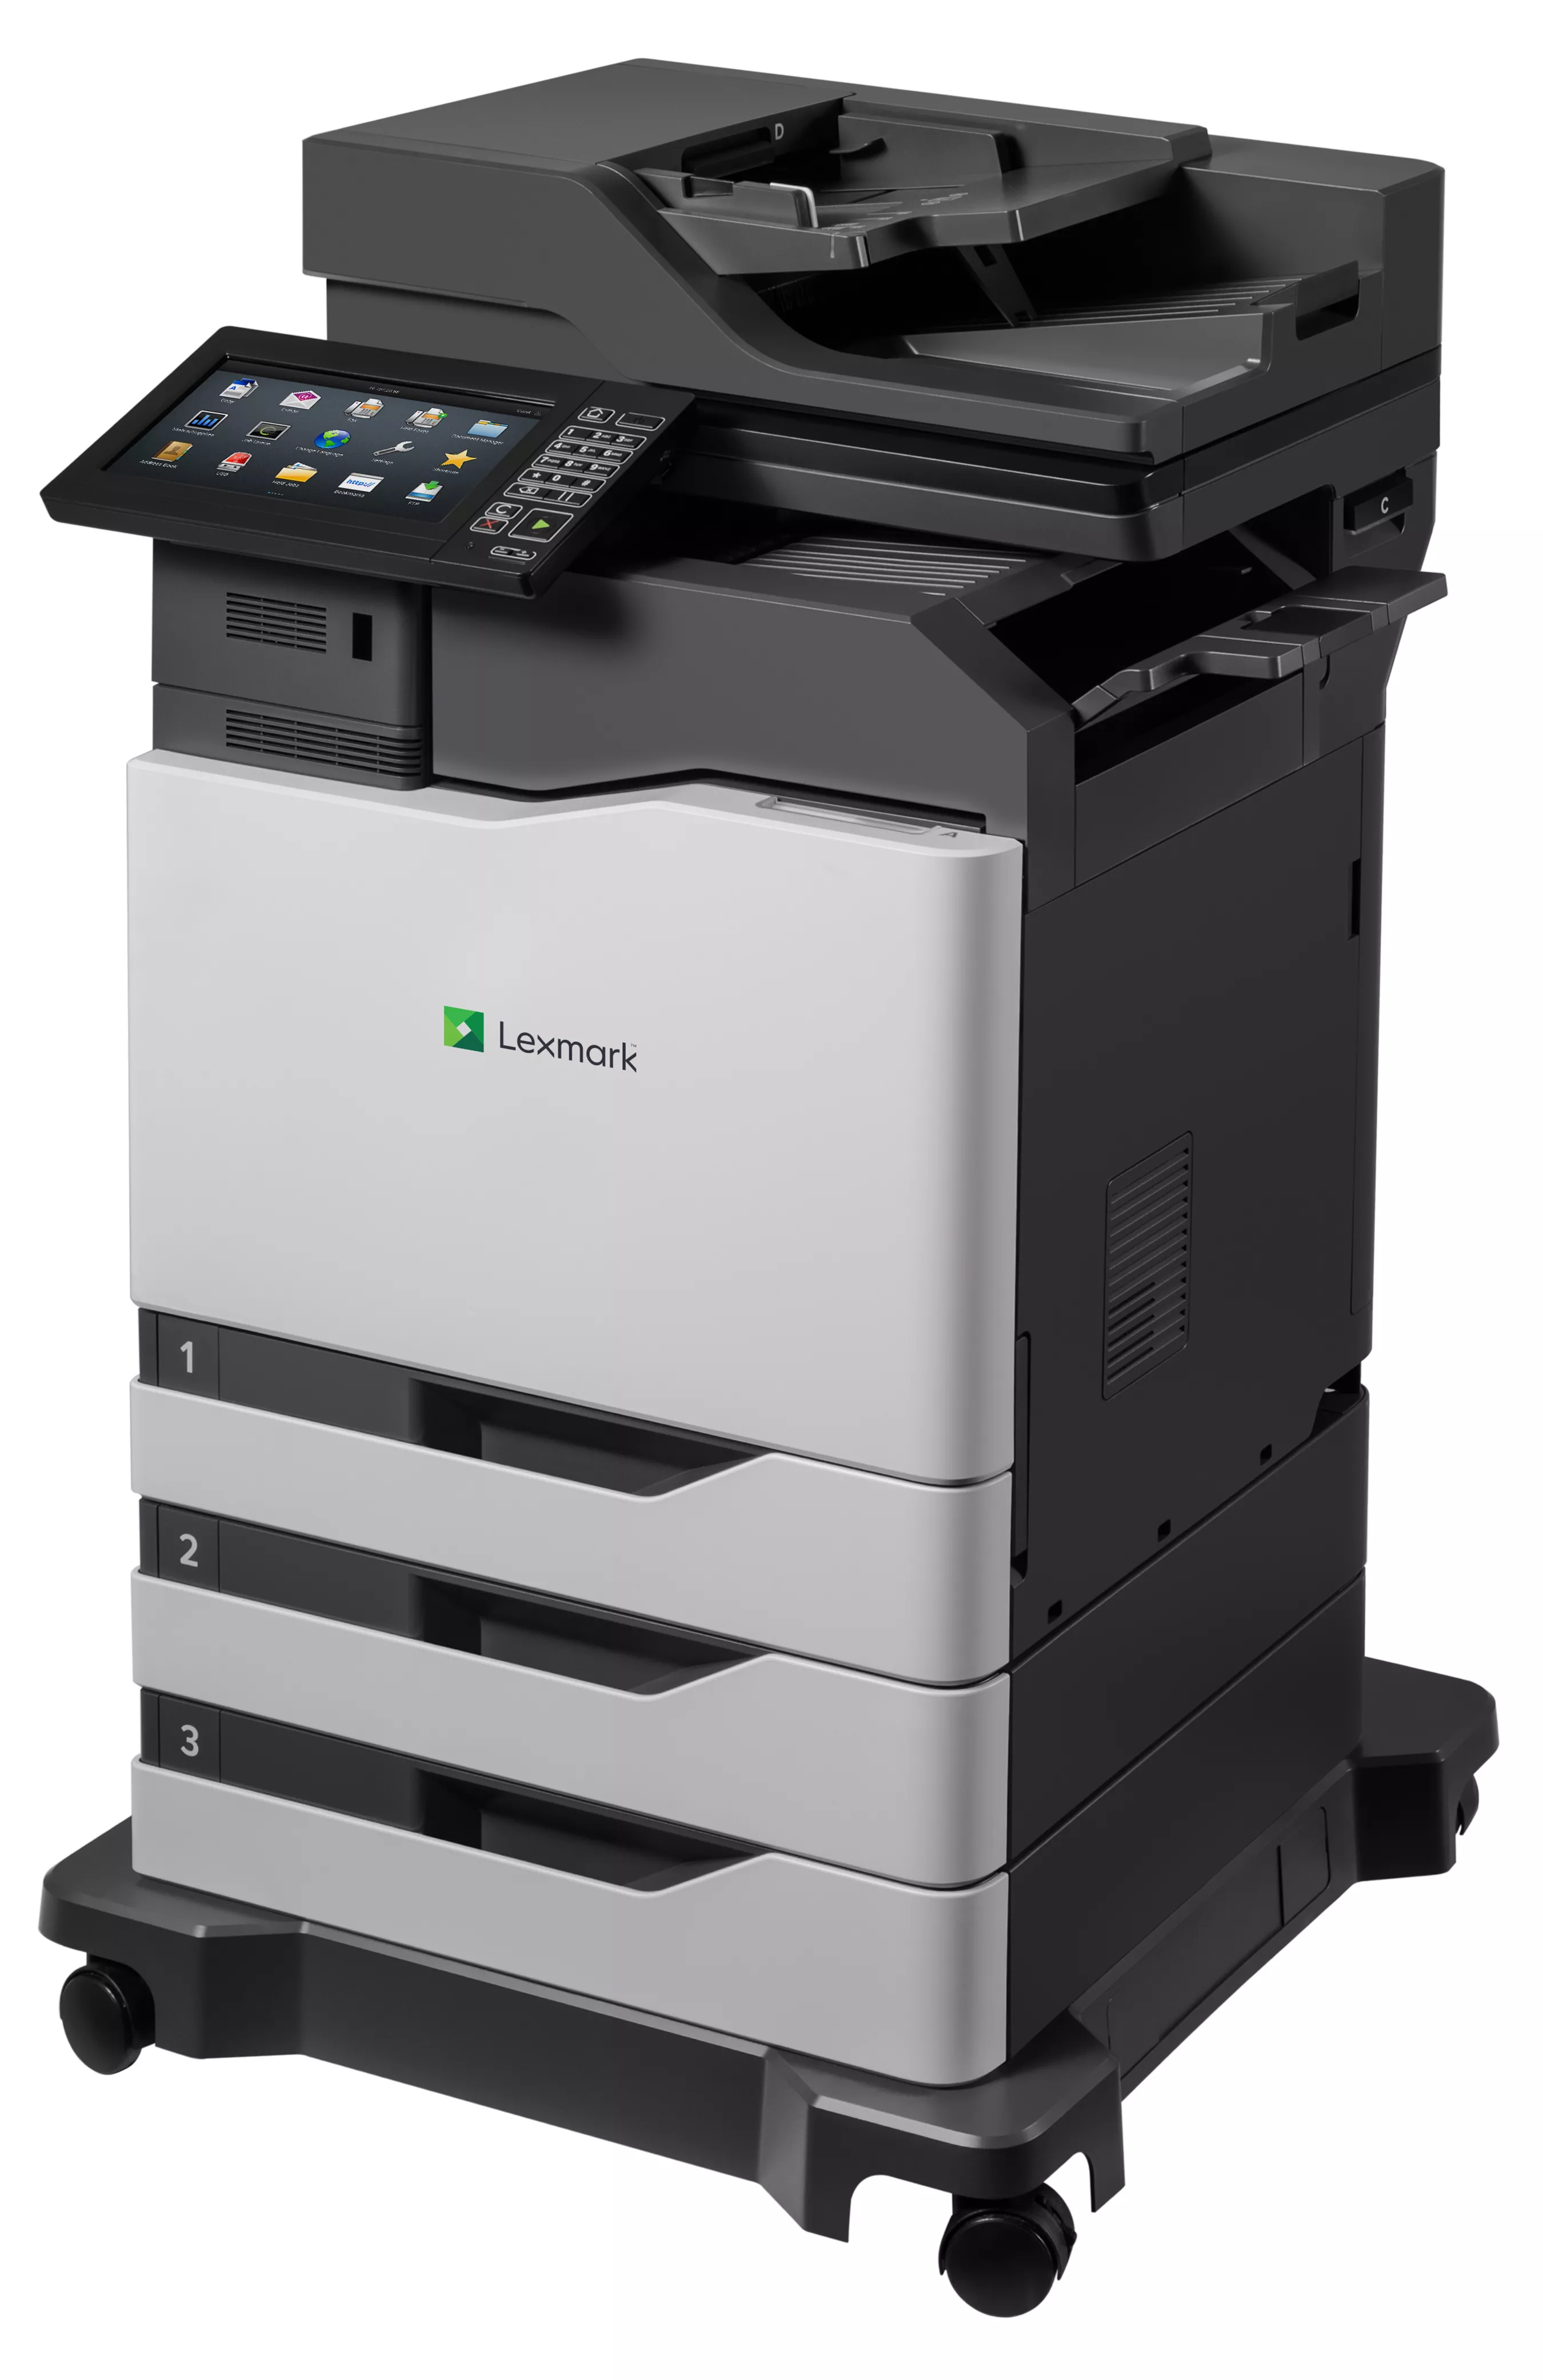 Vente LEXMARK CX860dtfe MFP color A4 laserprinter 57ppm Lexmark au meilleur prix - visuel 2